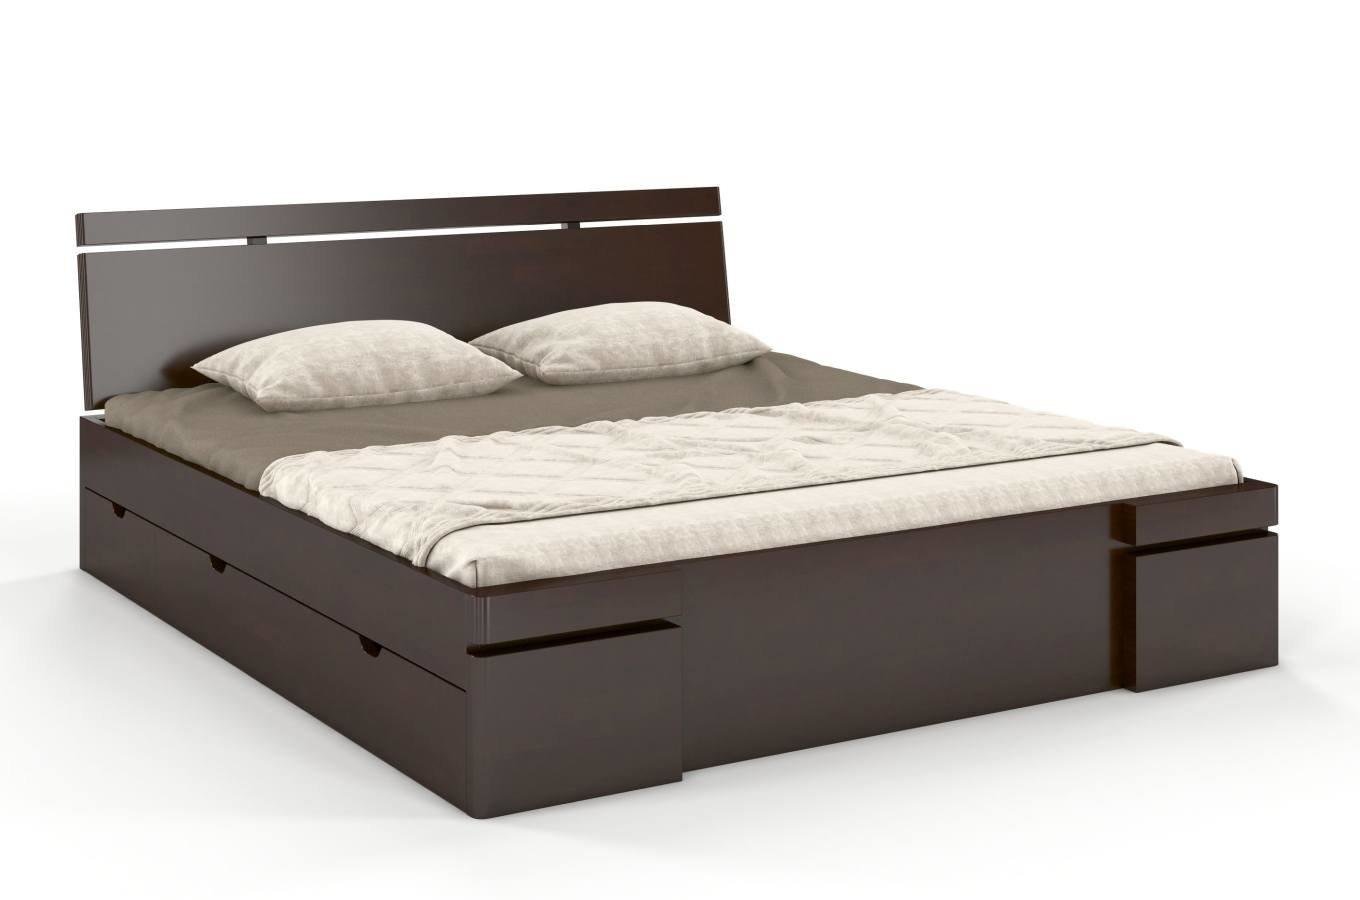 Łóżko drewniane bukowe z szufladami Skandica SPARTA Maxi & DR / 120x200 cm, kolor palisander